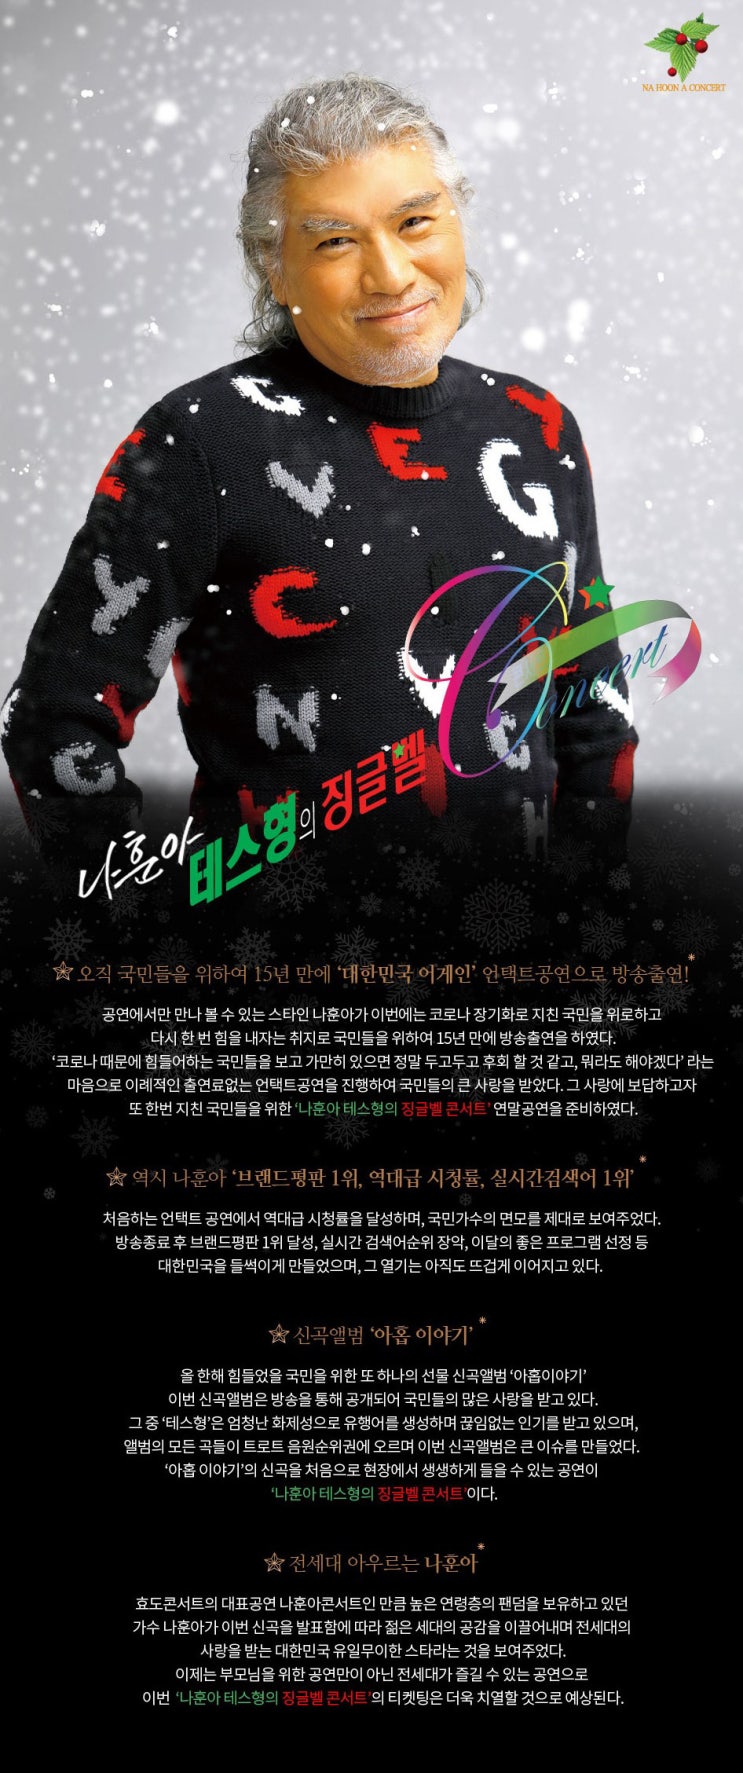 2020 나훈아 콘서트 테스형의 징글벨 티켓오픈 일정 및 공연 정보